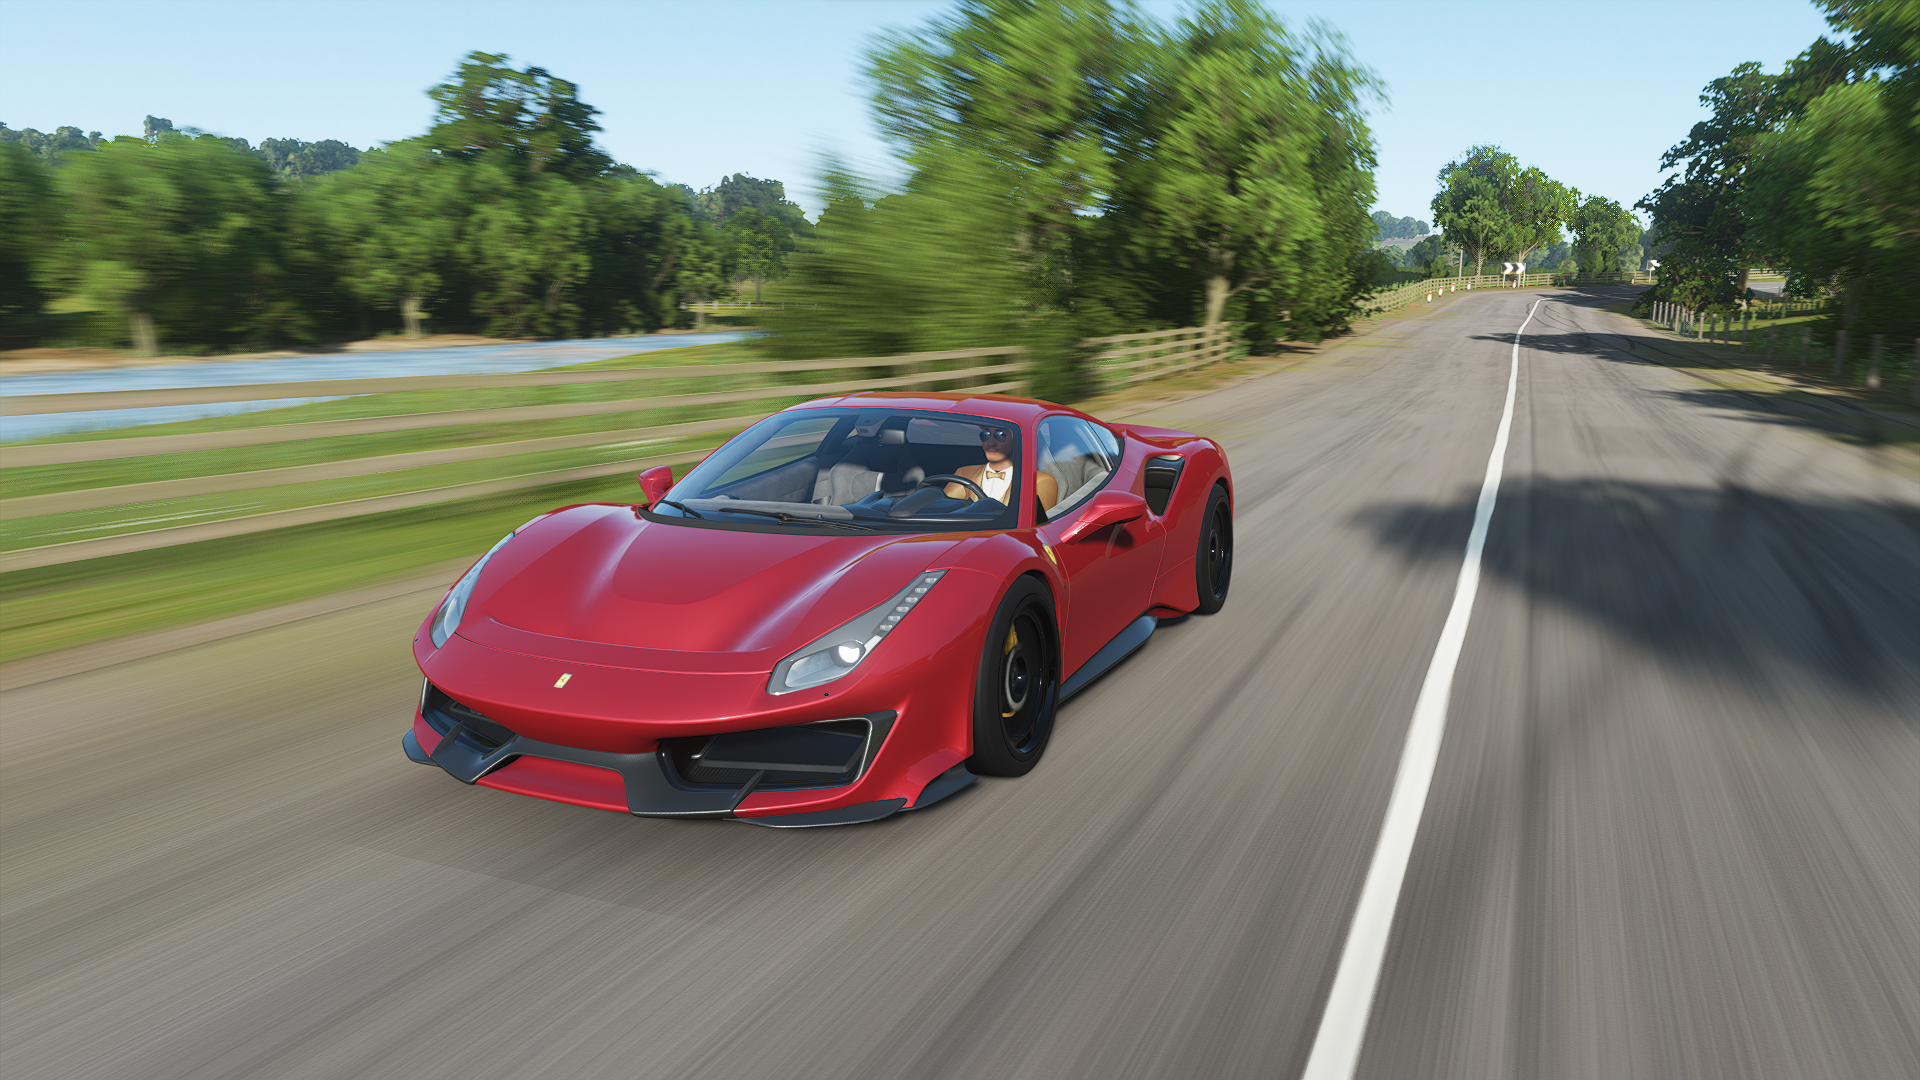 Forza Forza Horizon Forza Horizon 4 Car Racing Ferrari 488 Pista Video Games CGi Front Angle View He 1920x1080